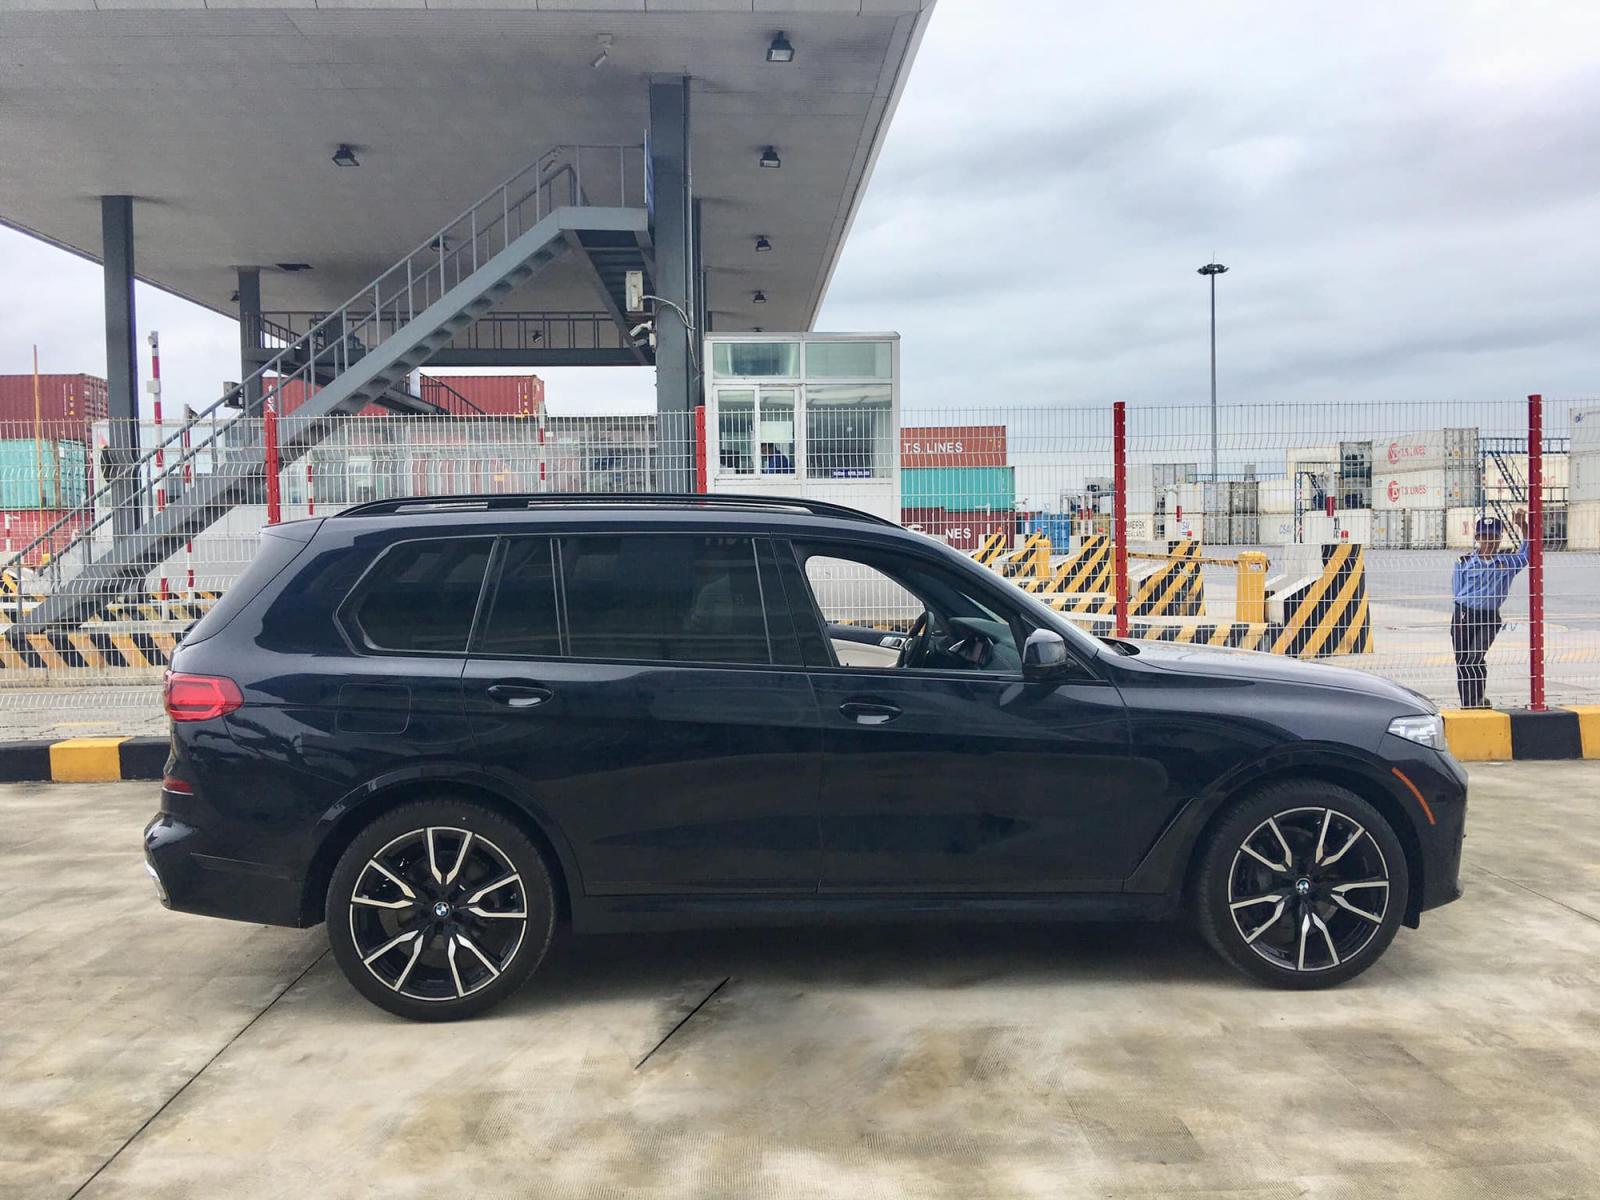 BMW X7 2019 đầu tiên về Việt Nam, giá khoảng 7 tỷ đồng 2a